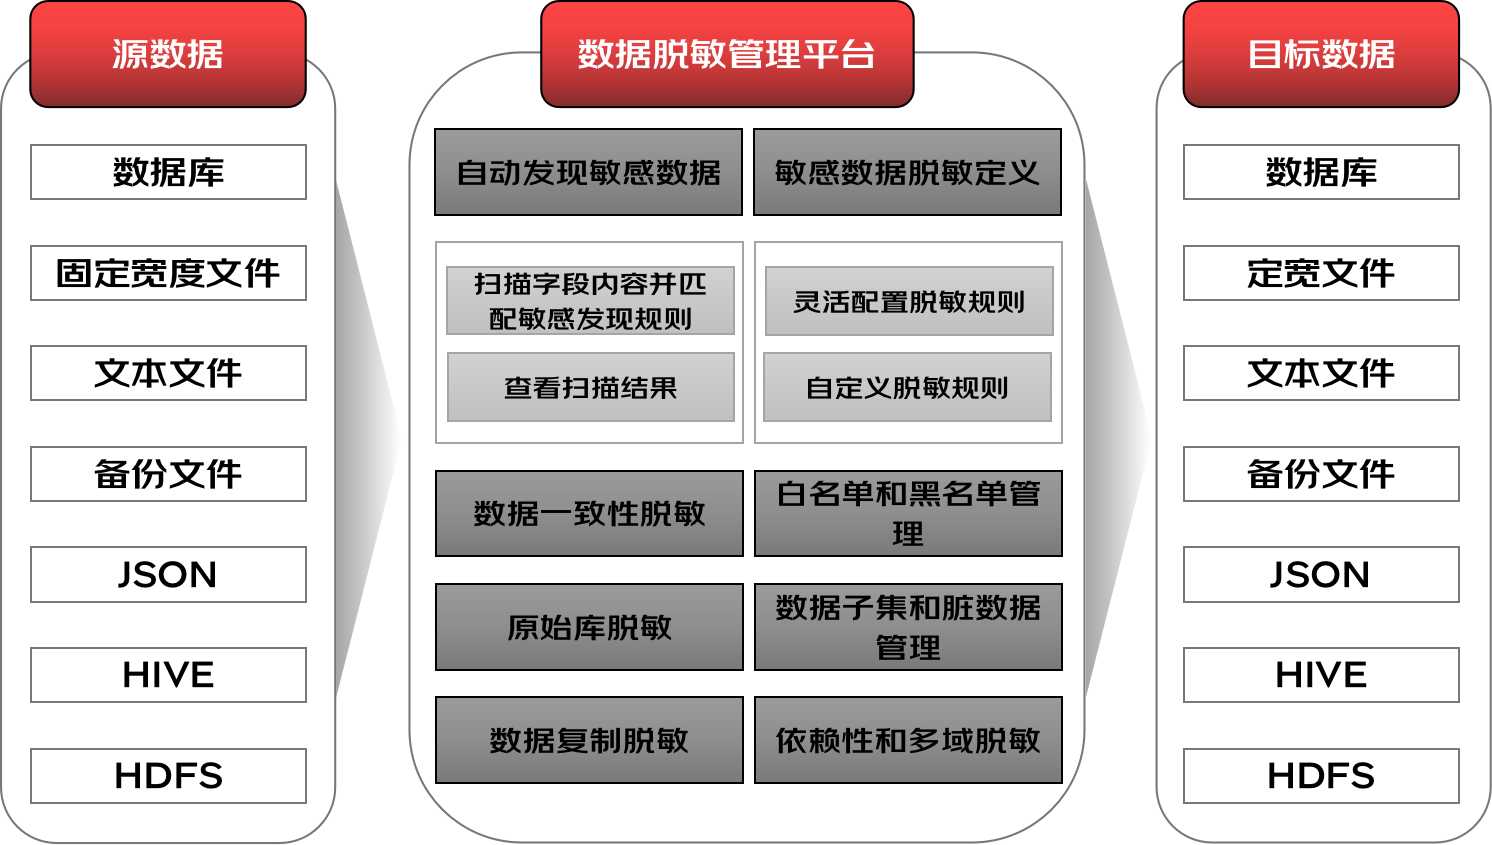 《中国人民银行业务领域数据安全管理办法》与个人信息保护关键技术研究 | 京东云技术团队